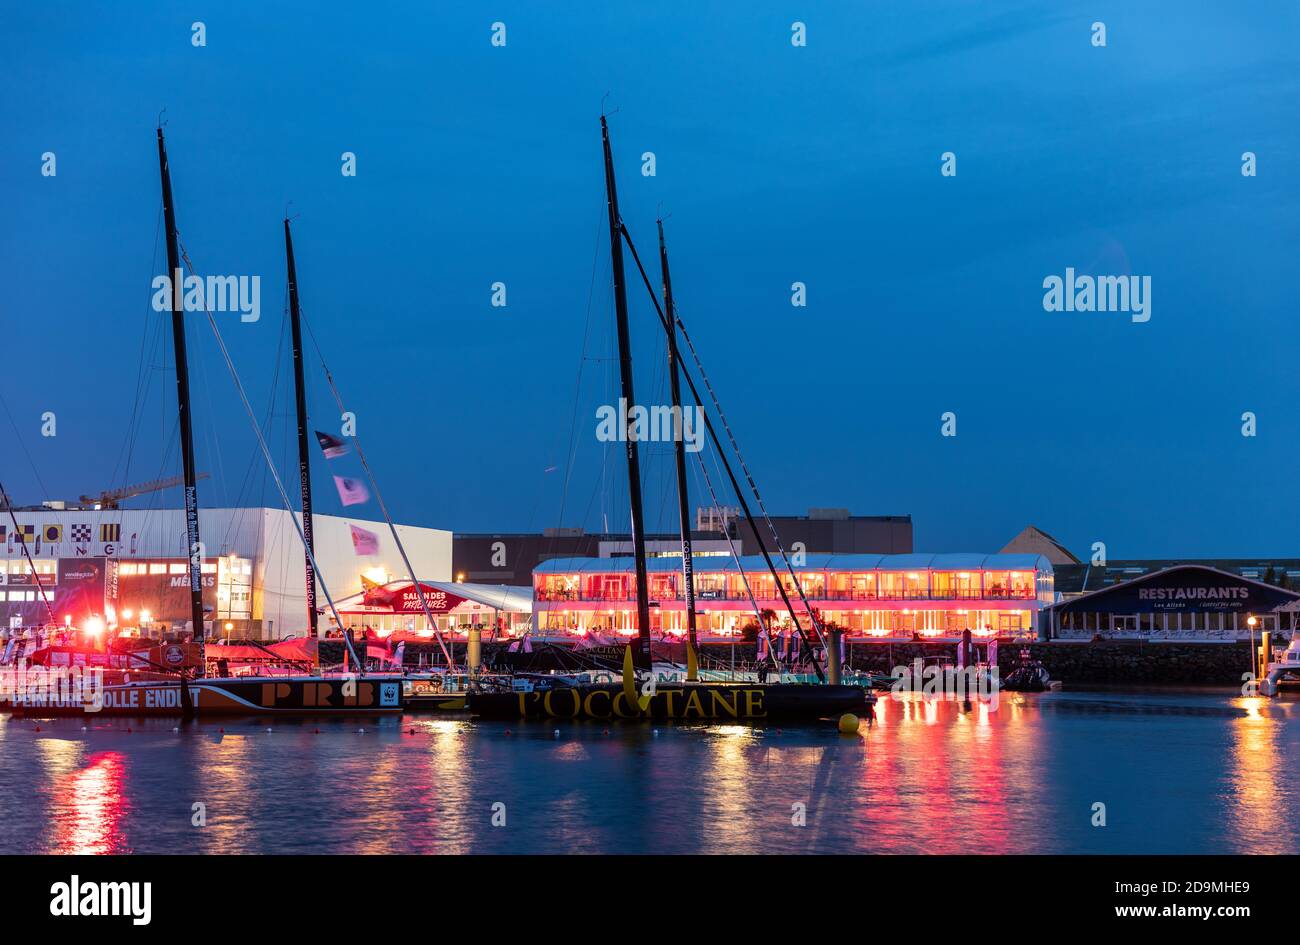 LES SABLES D'OLONNE, FRANCIA - 6 NOVEMBRE 2020: Monoscafi sul pontile per il Vendee Globe 2020 di notte a Les Sables d'Olonne Foto Stock